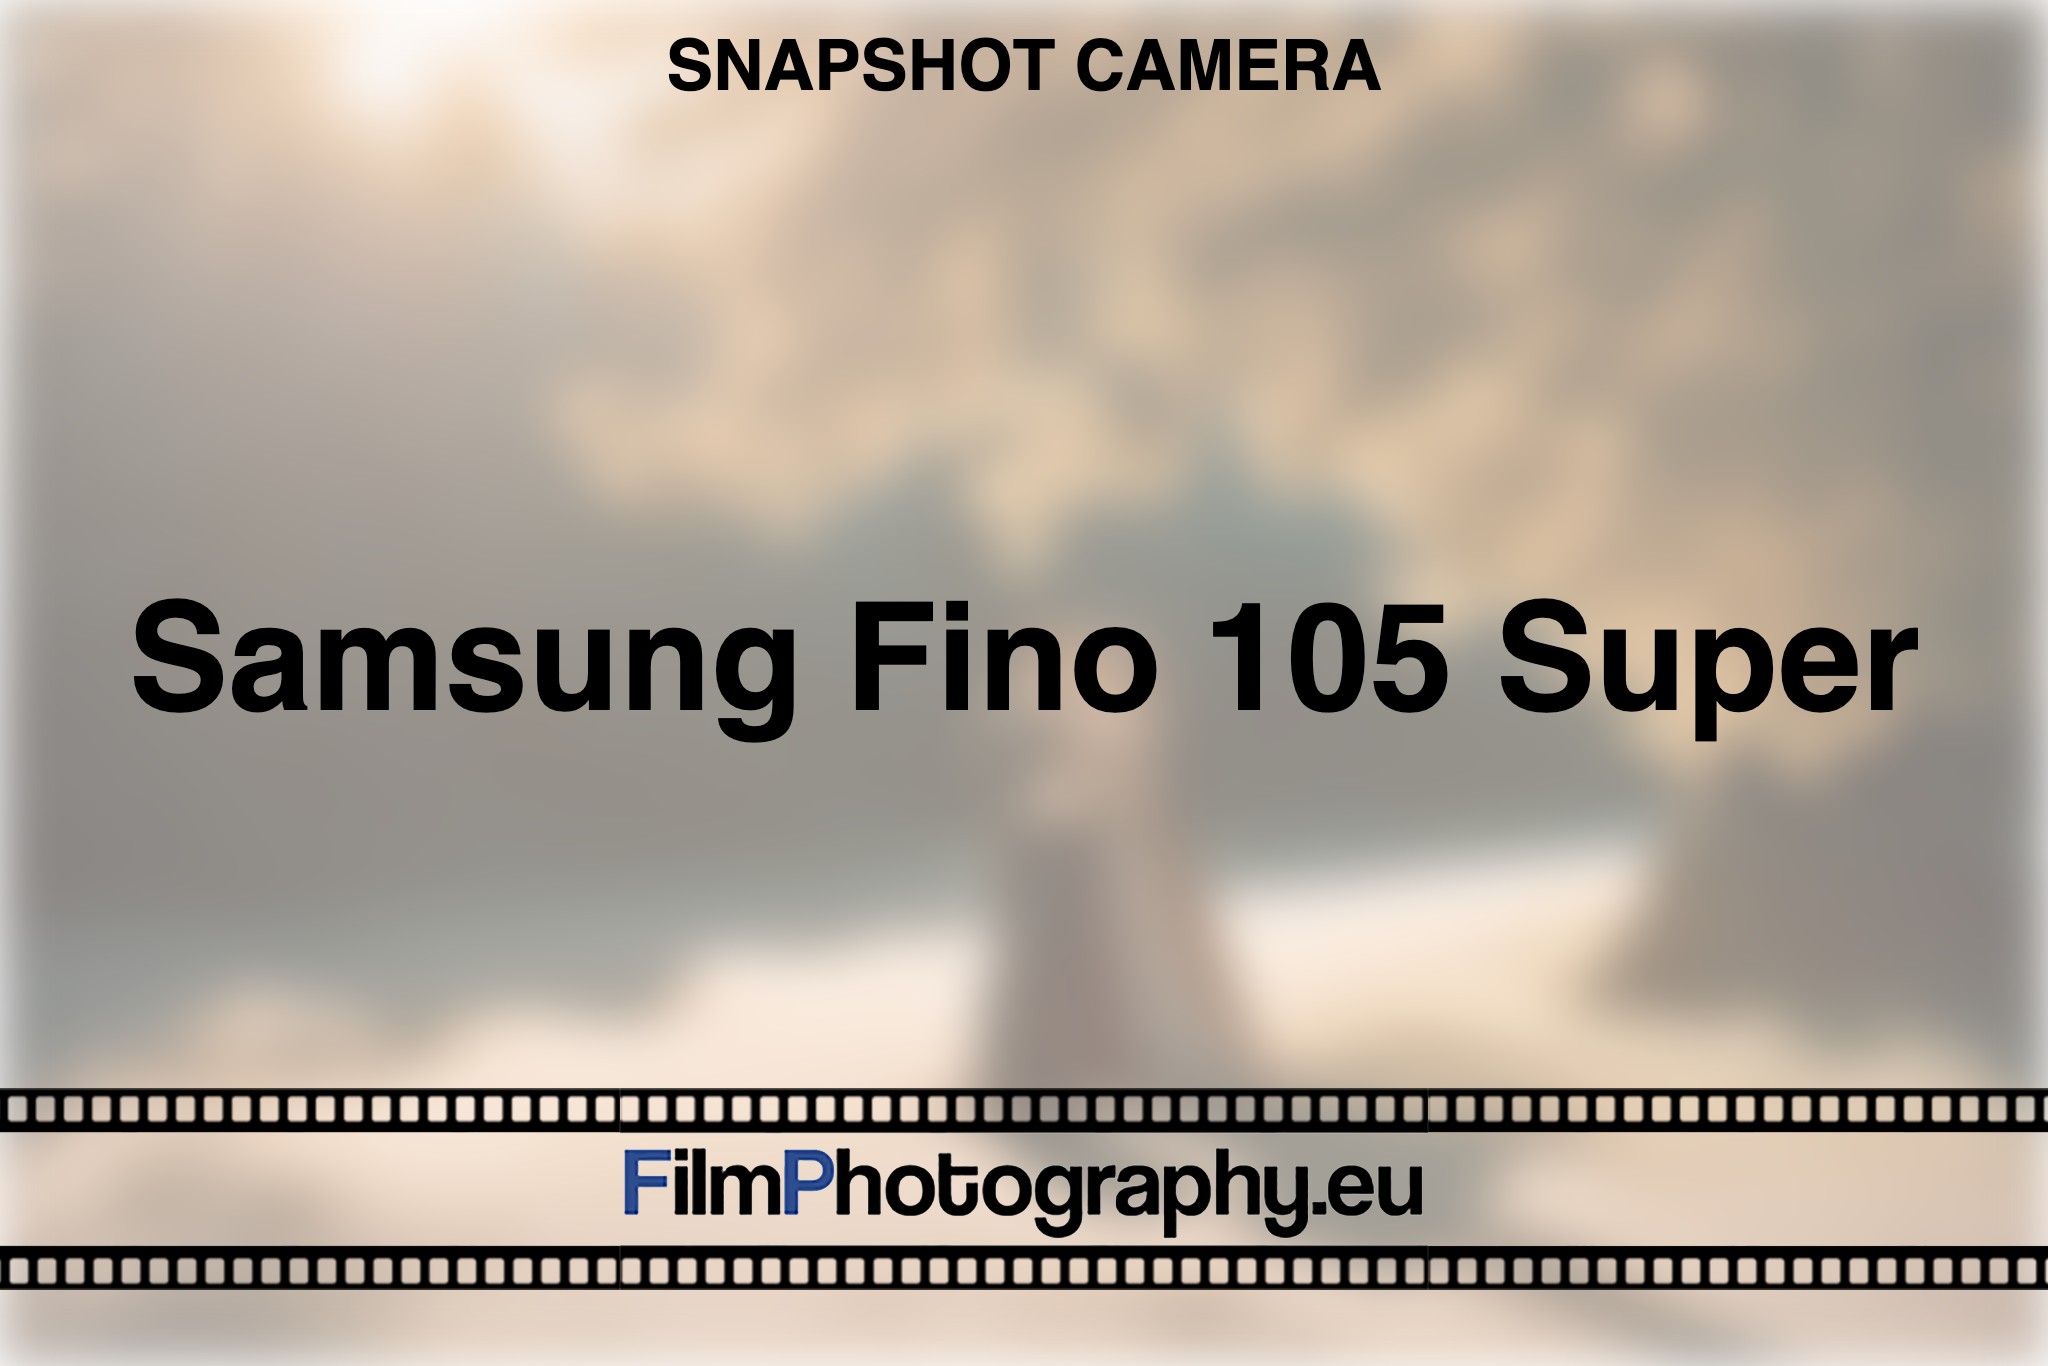 samsung-fino-105-super-snapshot-camera-bnv